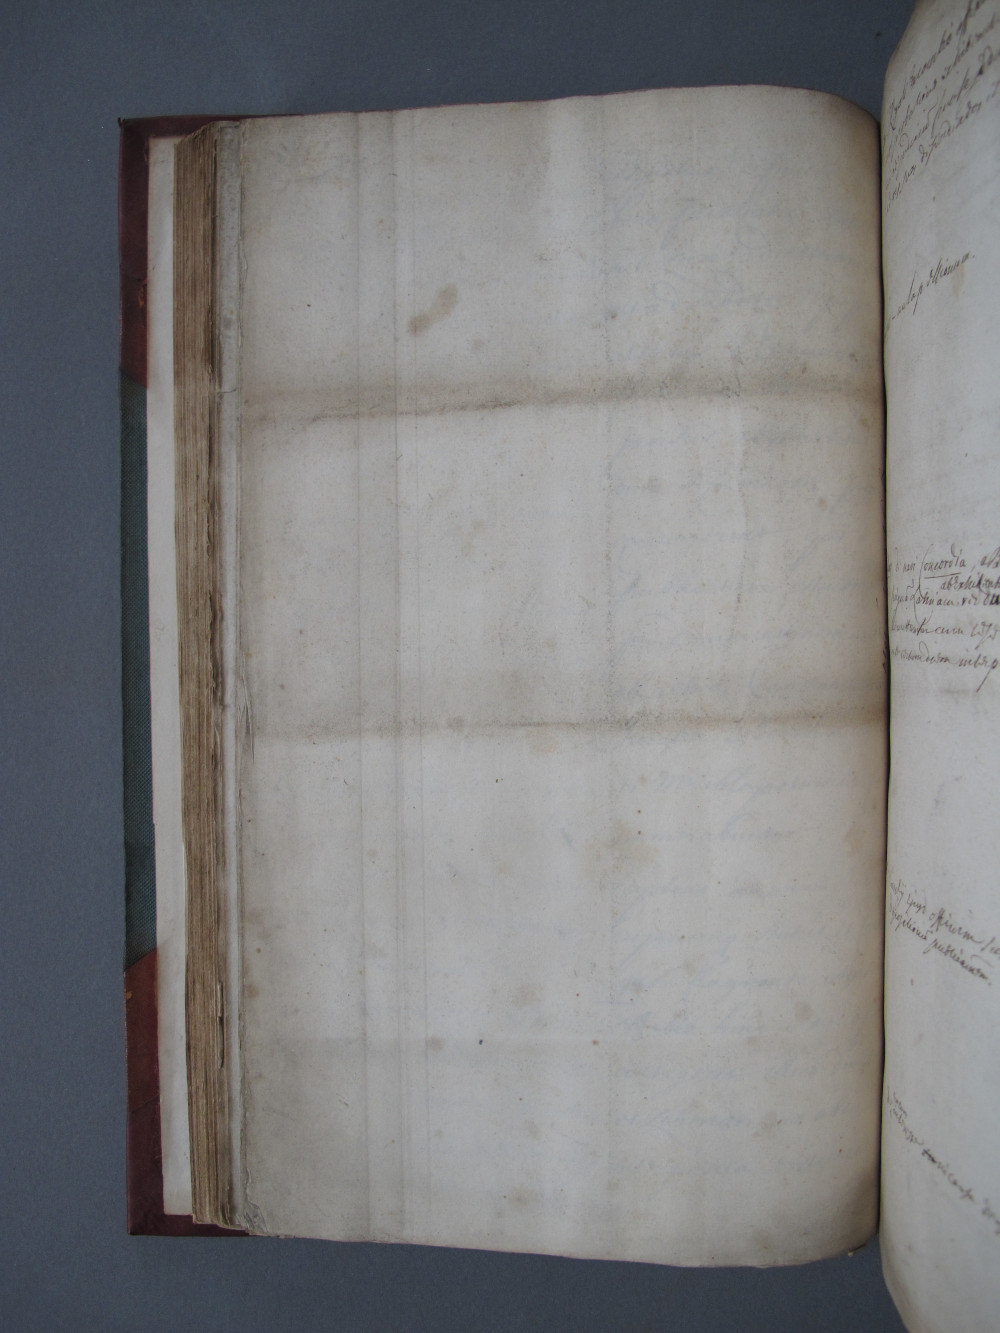 Folio 50v b Folio 10 verso